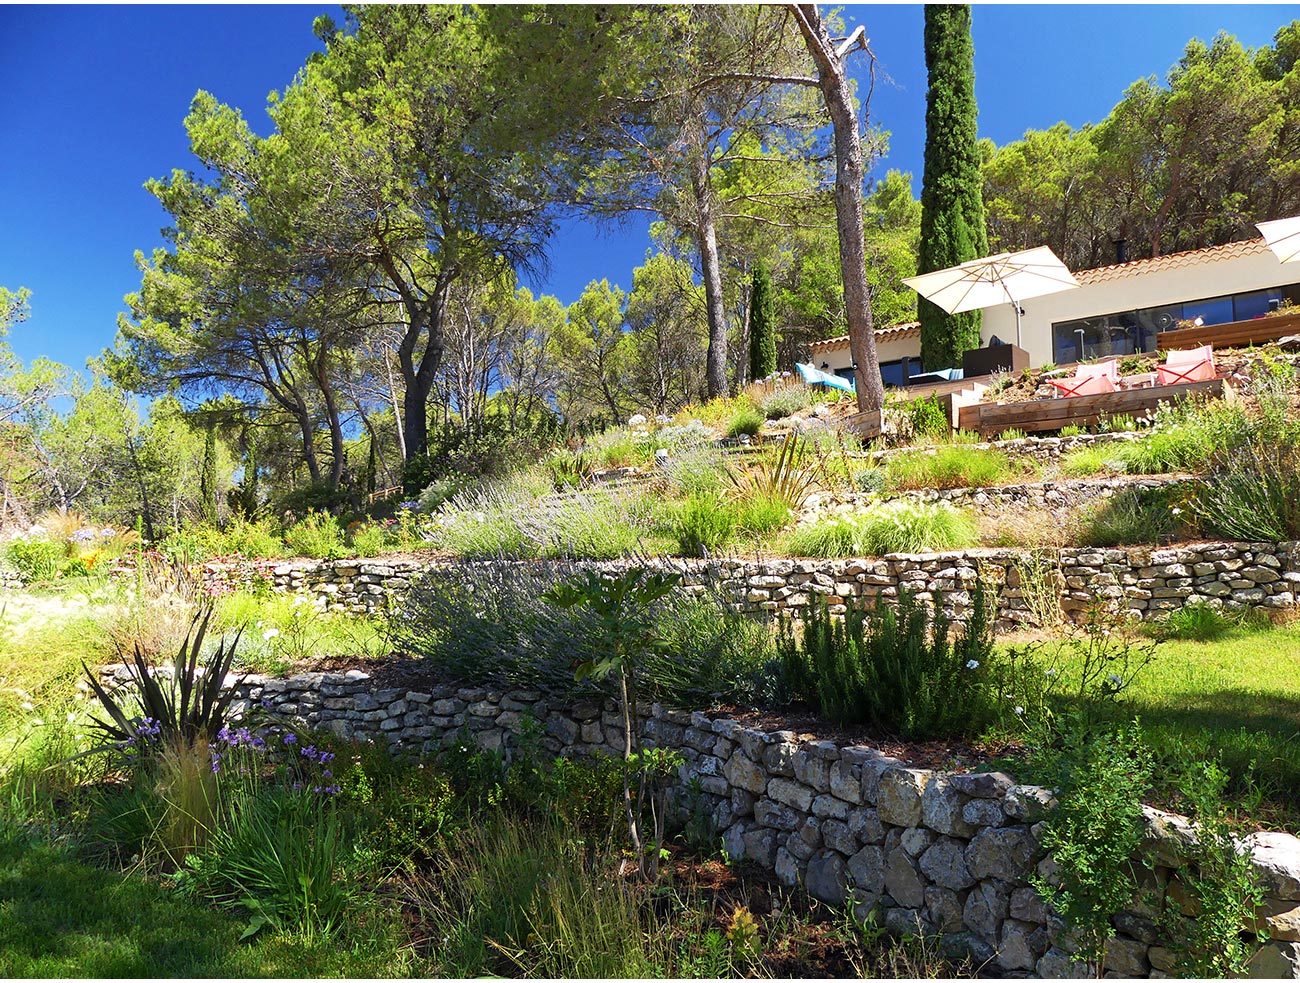 Atelier Naudier - Architecte paysagiste concepteur - Montpellier et Aix en Provence - Jardin en restanque naturaliste - aménagement jardin